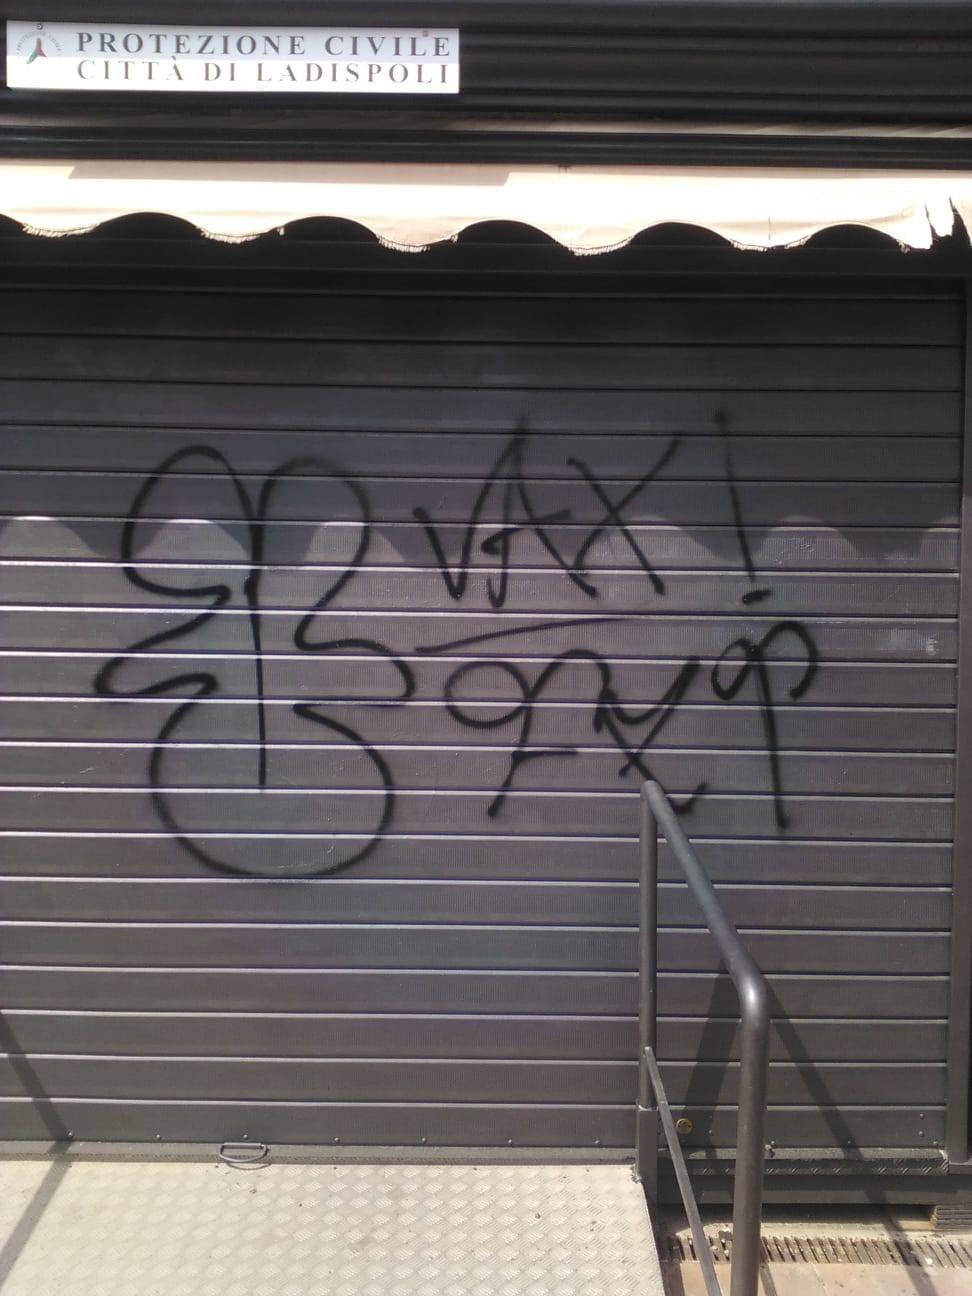 Atti di vandalismo sul gabbiotto della protezione civile Comunale di Ladispoli